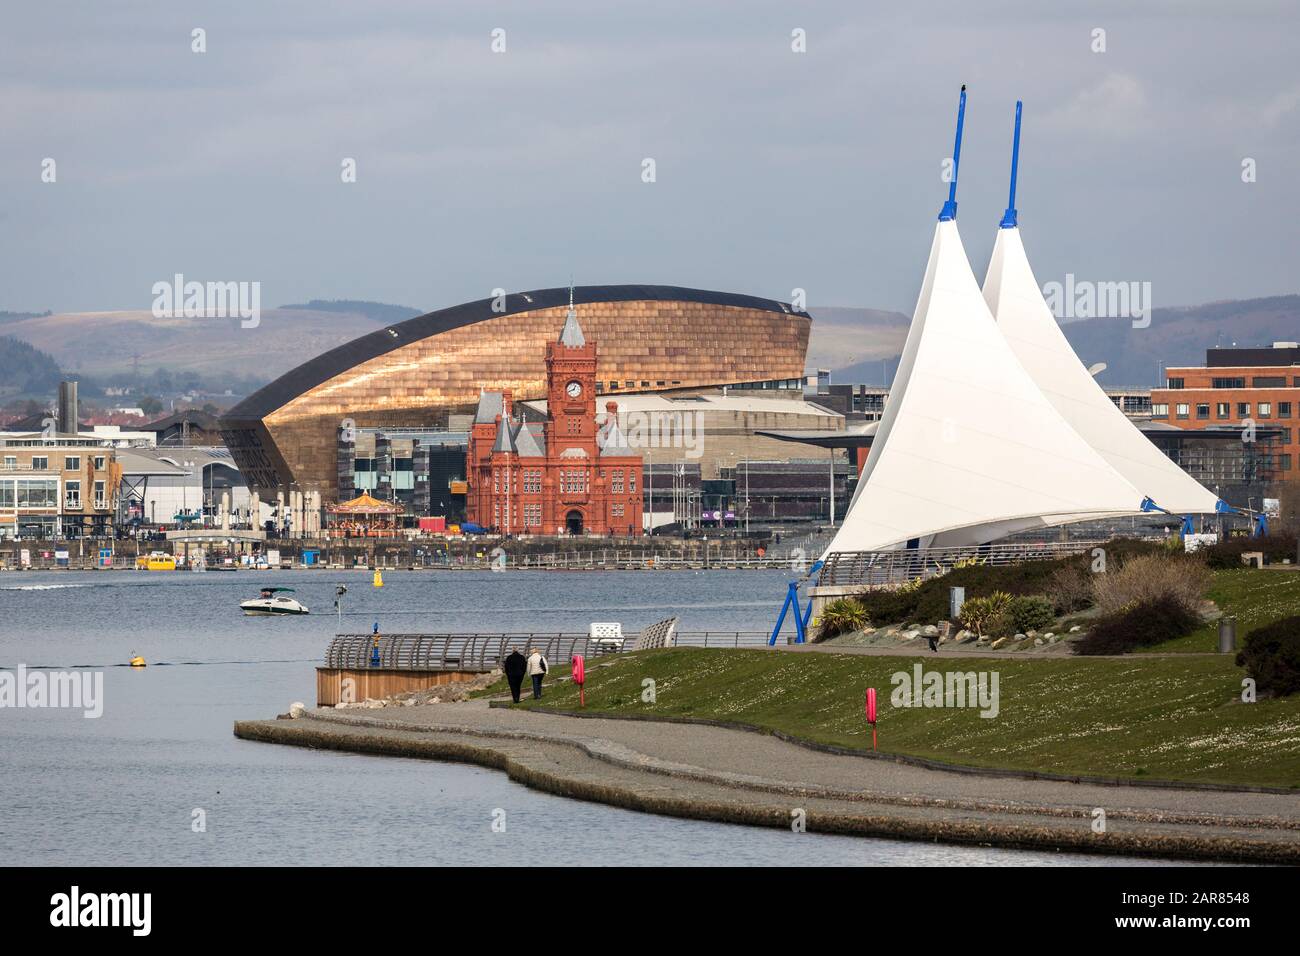 Pavillon mit Menschen, die auf der Barrage mit dem Pierhead Gebäude und dem Millennium Center, Cardiff Bay, Wales, Großbritannien spazieren gehen Stockfoto